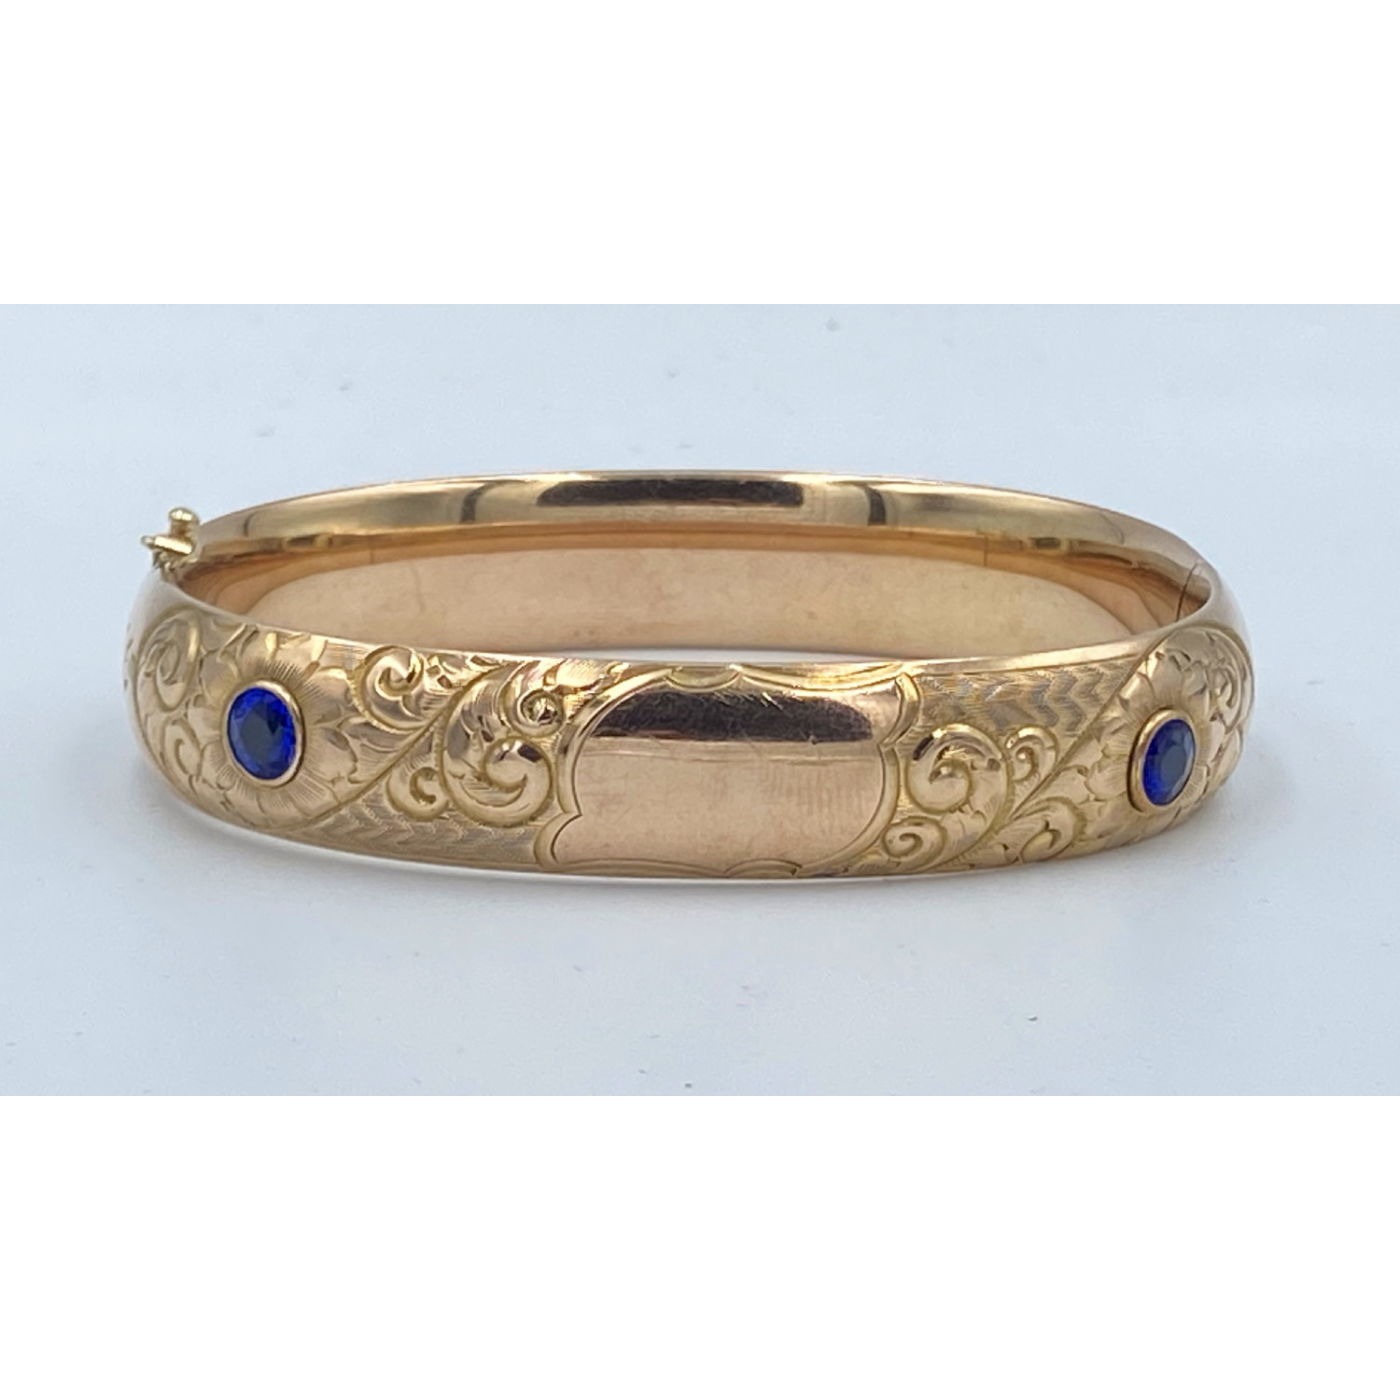 Spectacular Brilliant Blue Stones with Deep Repousse Engagement Bangle Bracelet